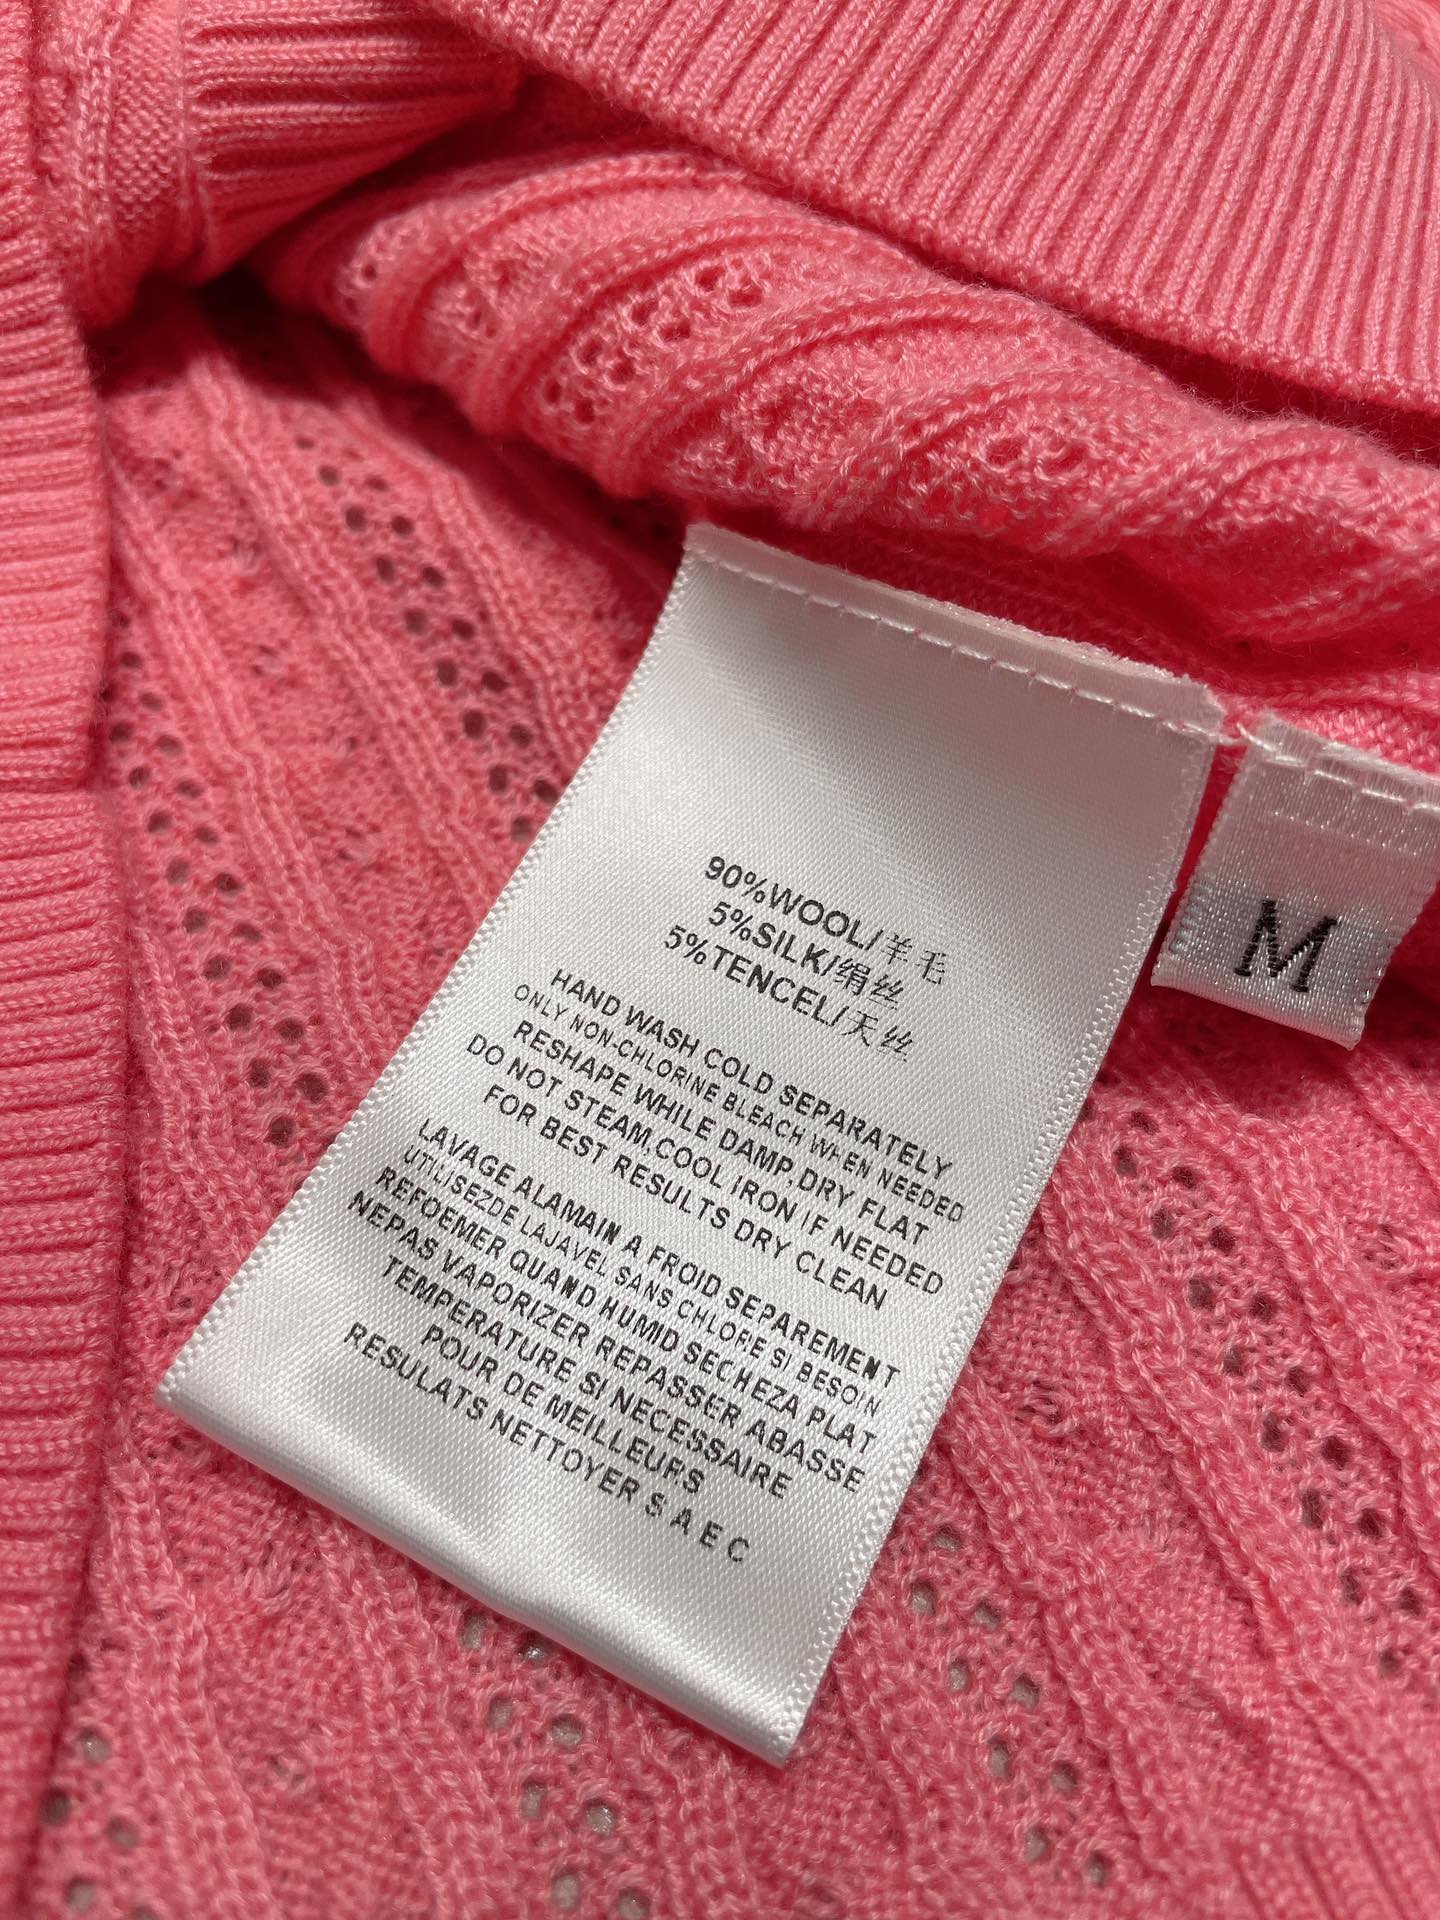 小鹿刺绣v领开衫超细腻绢丝羊毛面料白色桃粉色ML具体价格咨询客服